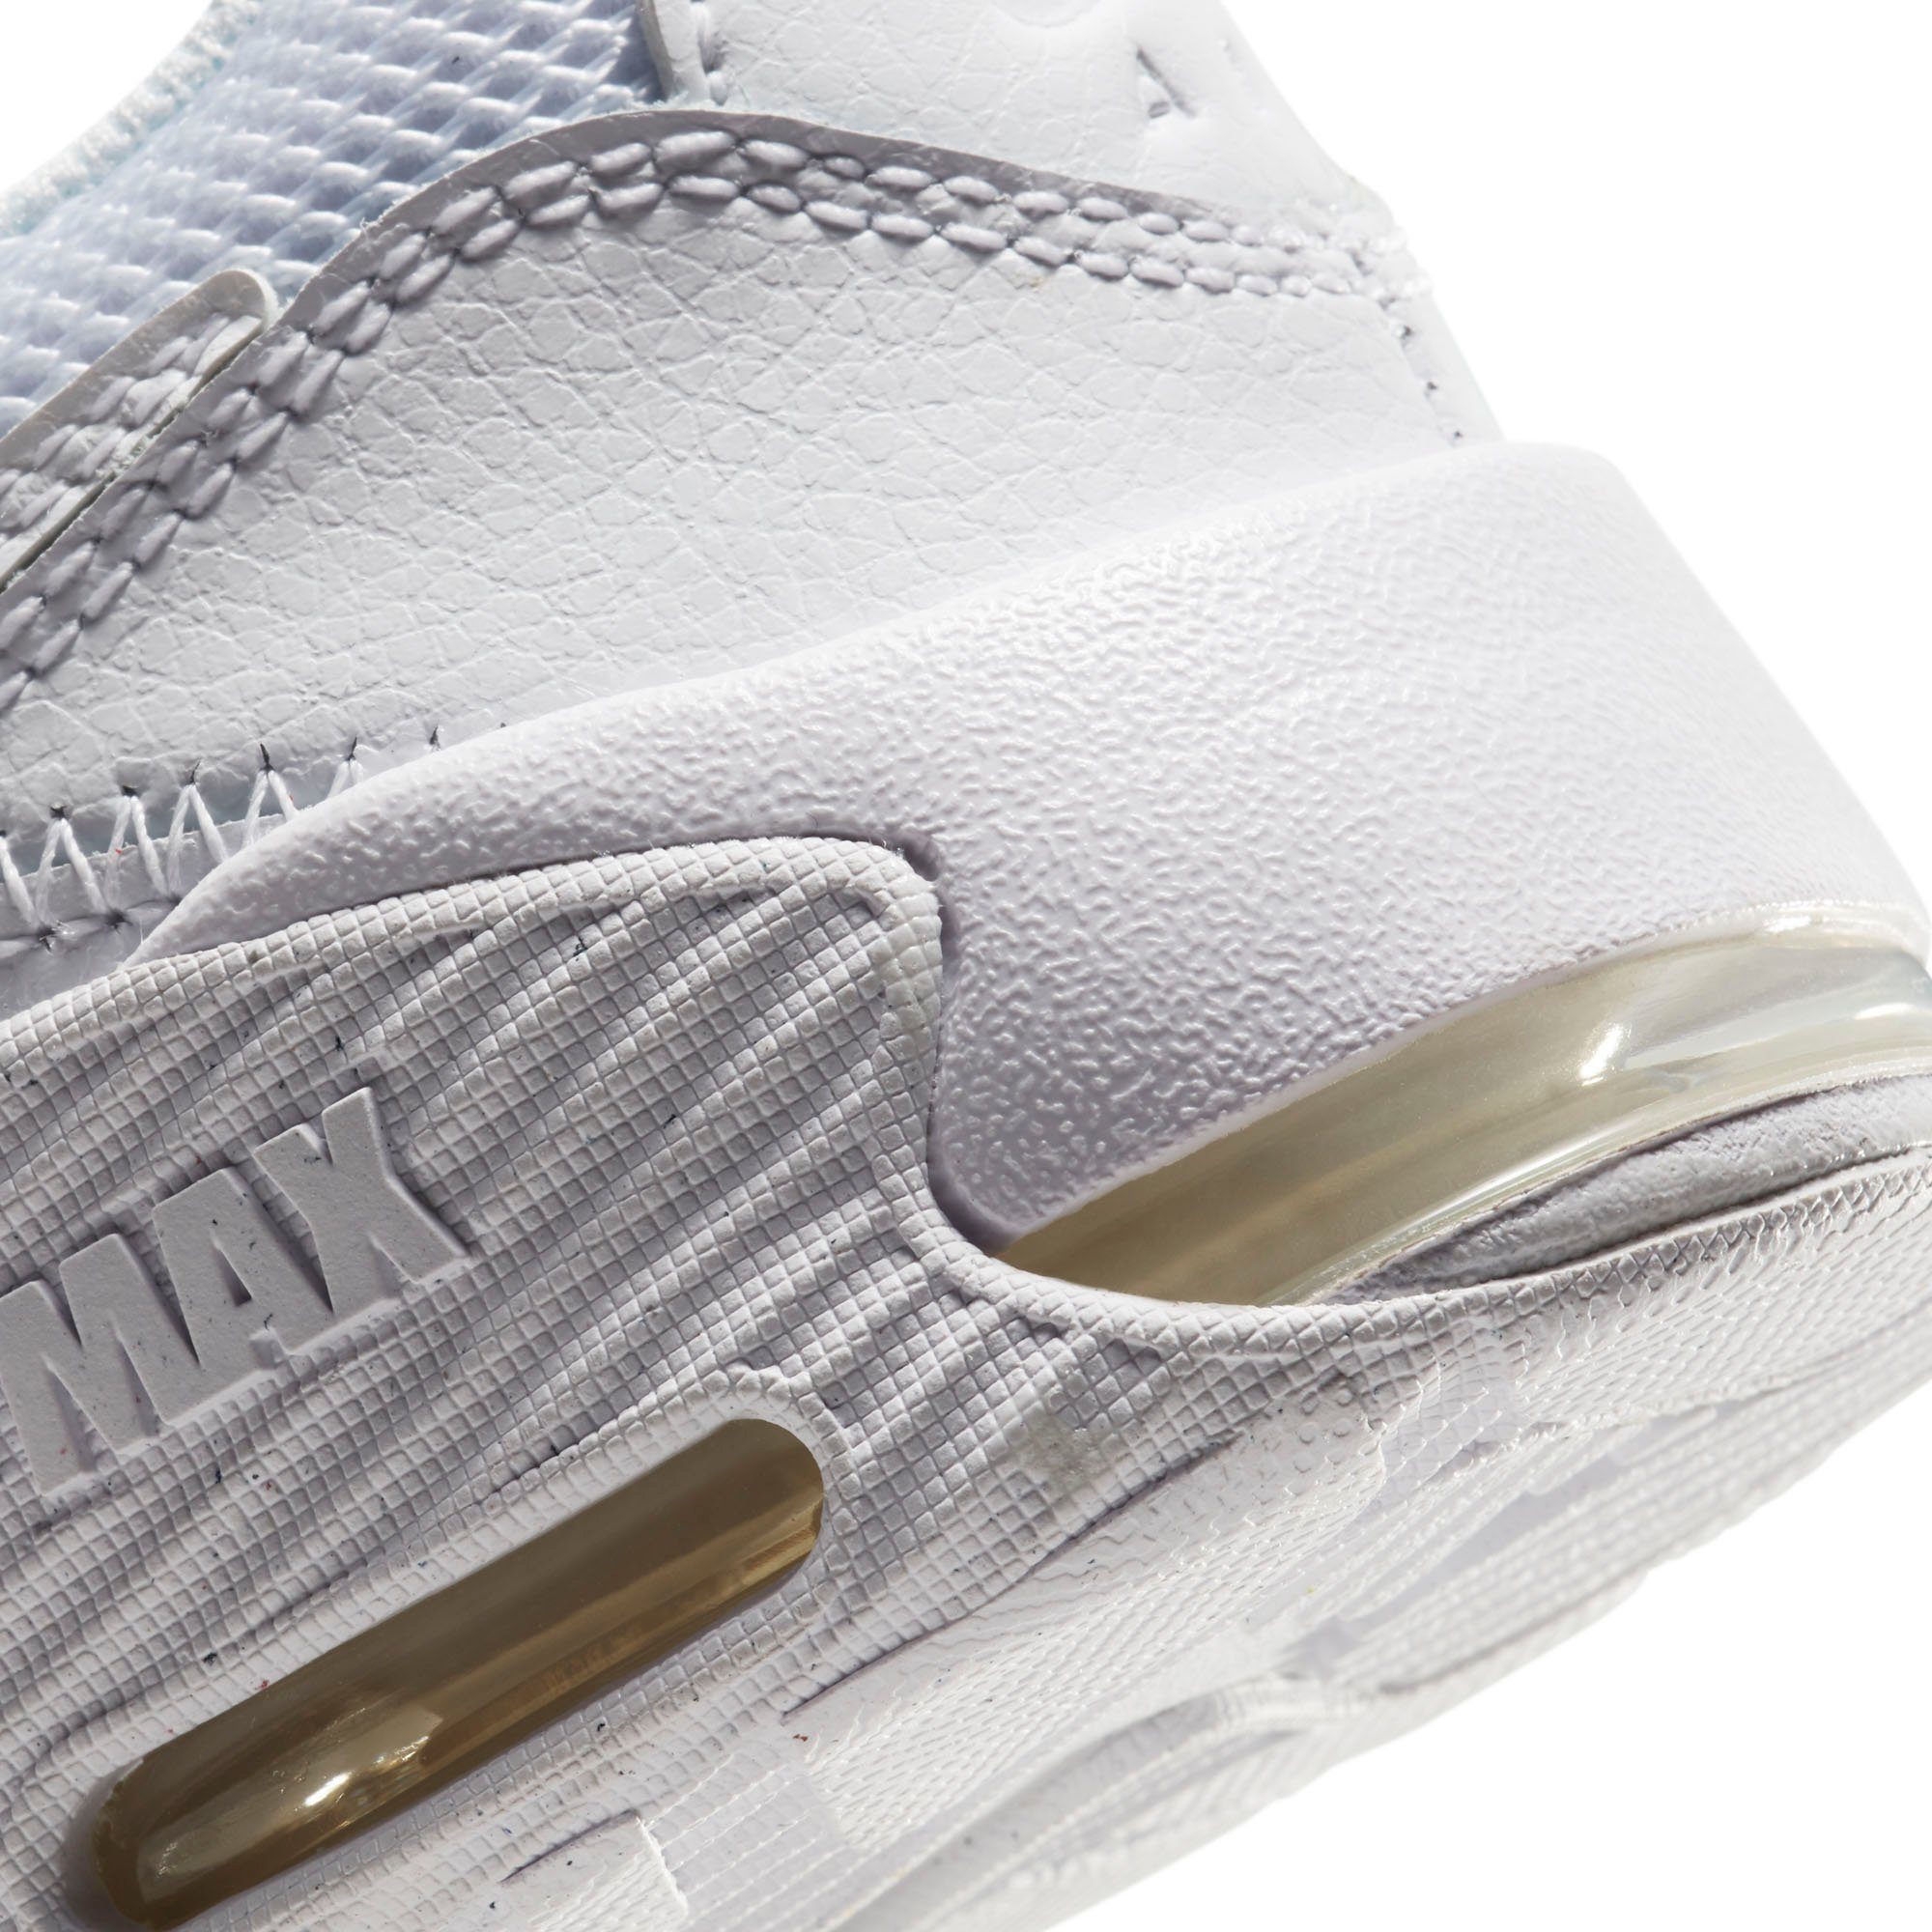 Nike Sportswear Sneaker Max Excee weiß Air